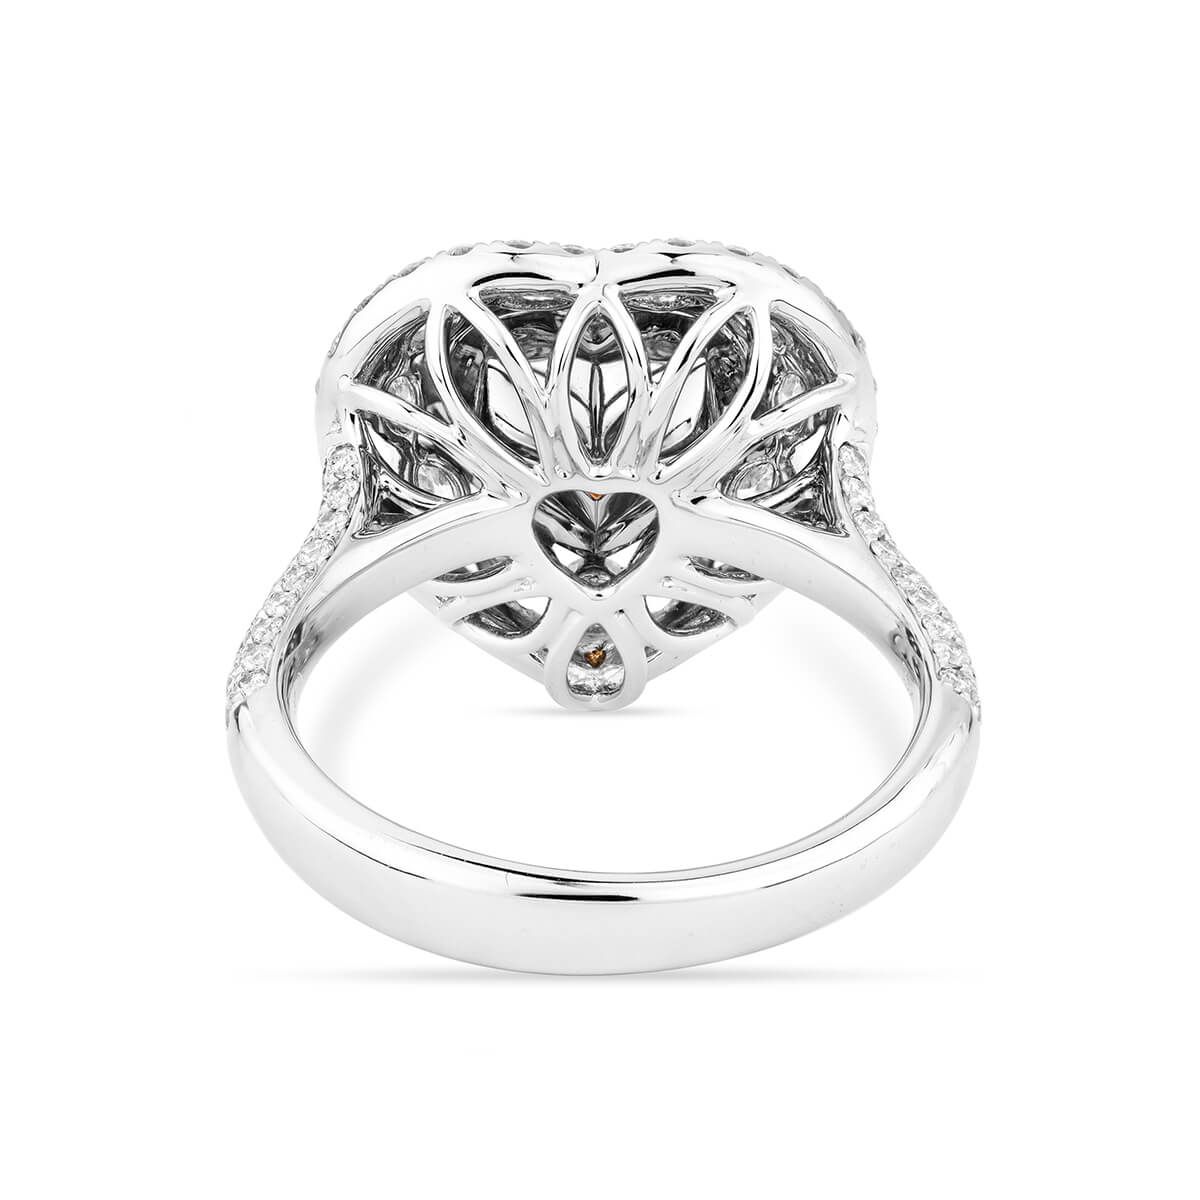 Fancy yellow Diamond Ring 2.01 ct. Heart Shape, GIA certified 1215816217